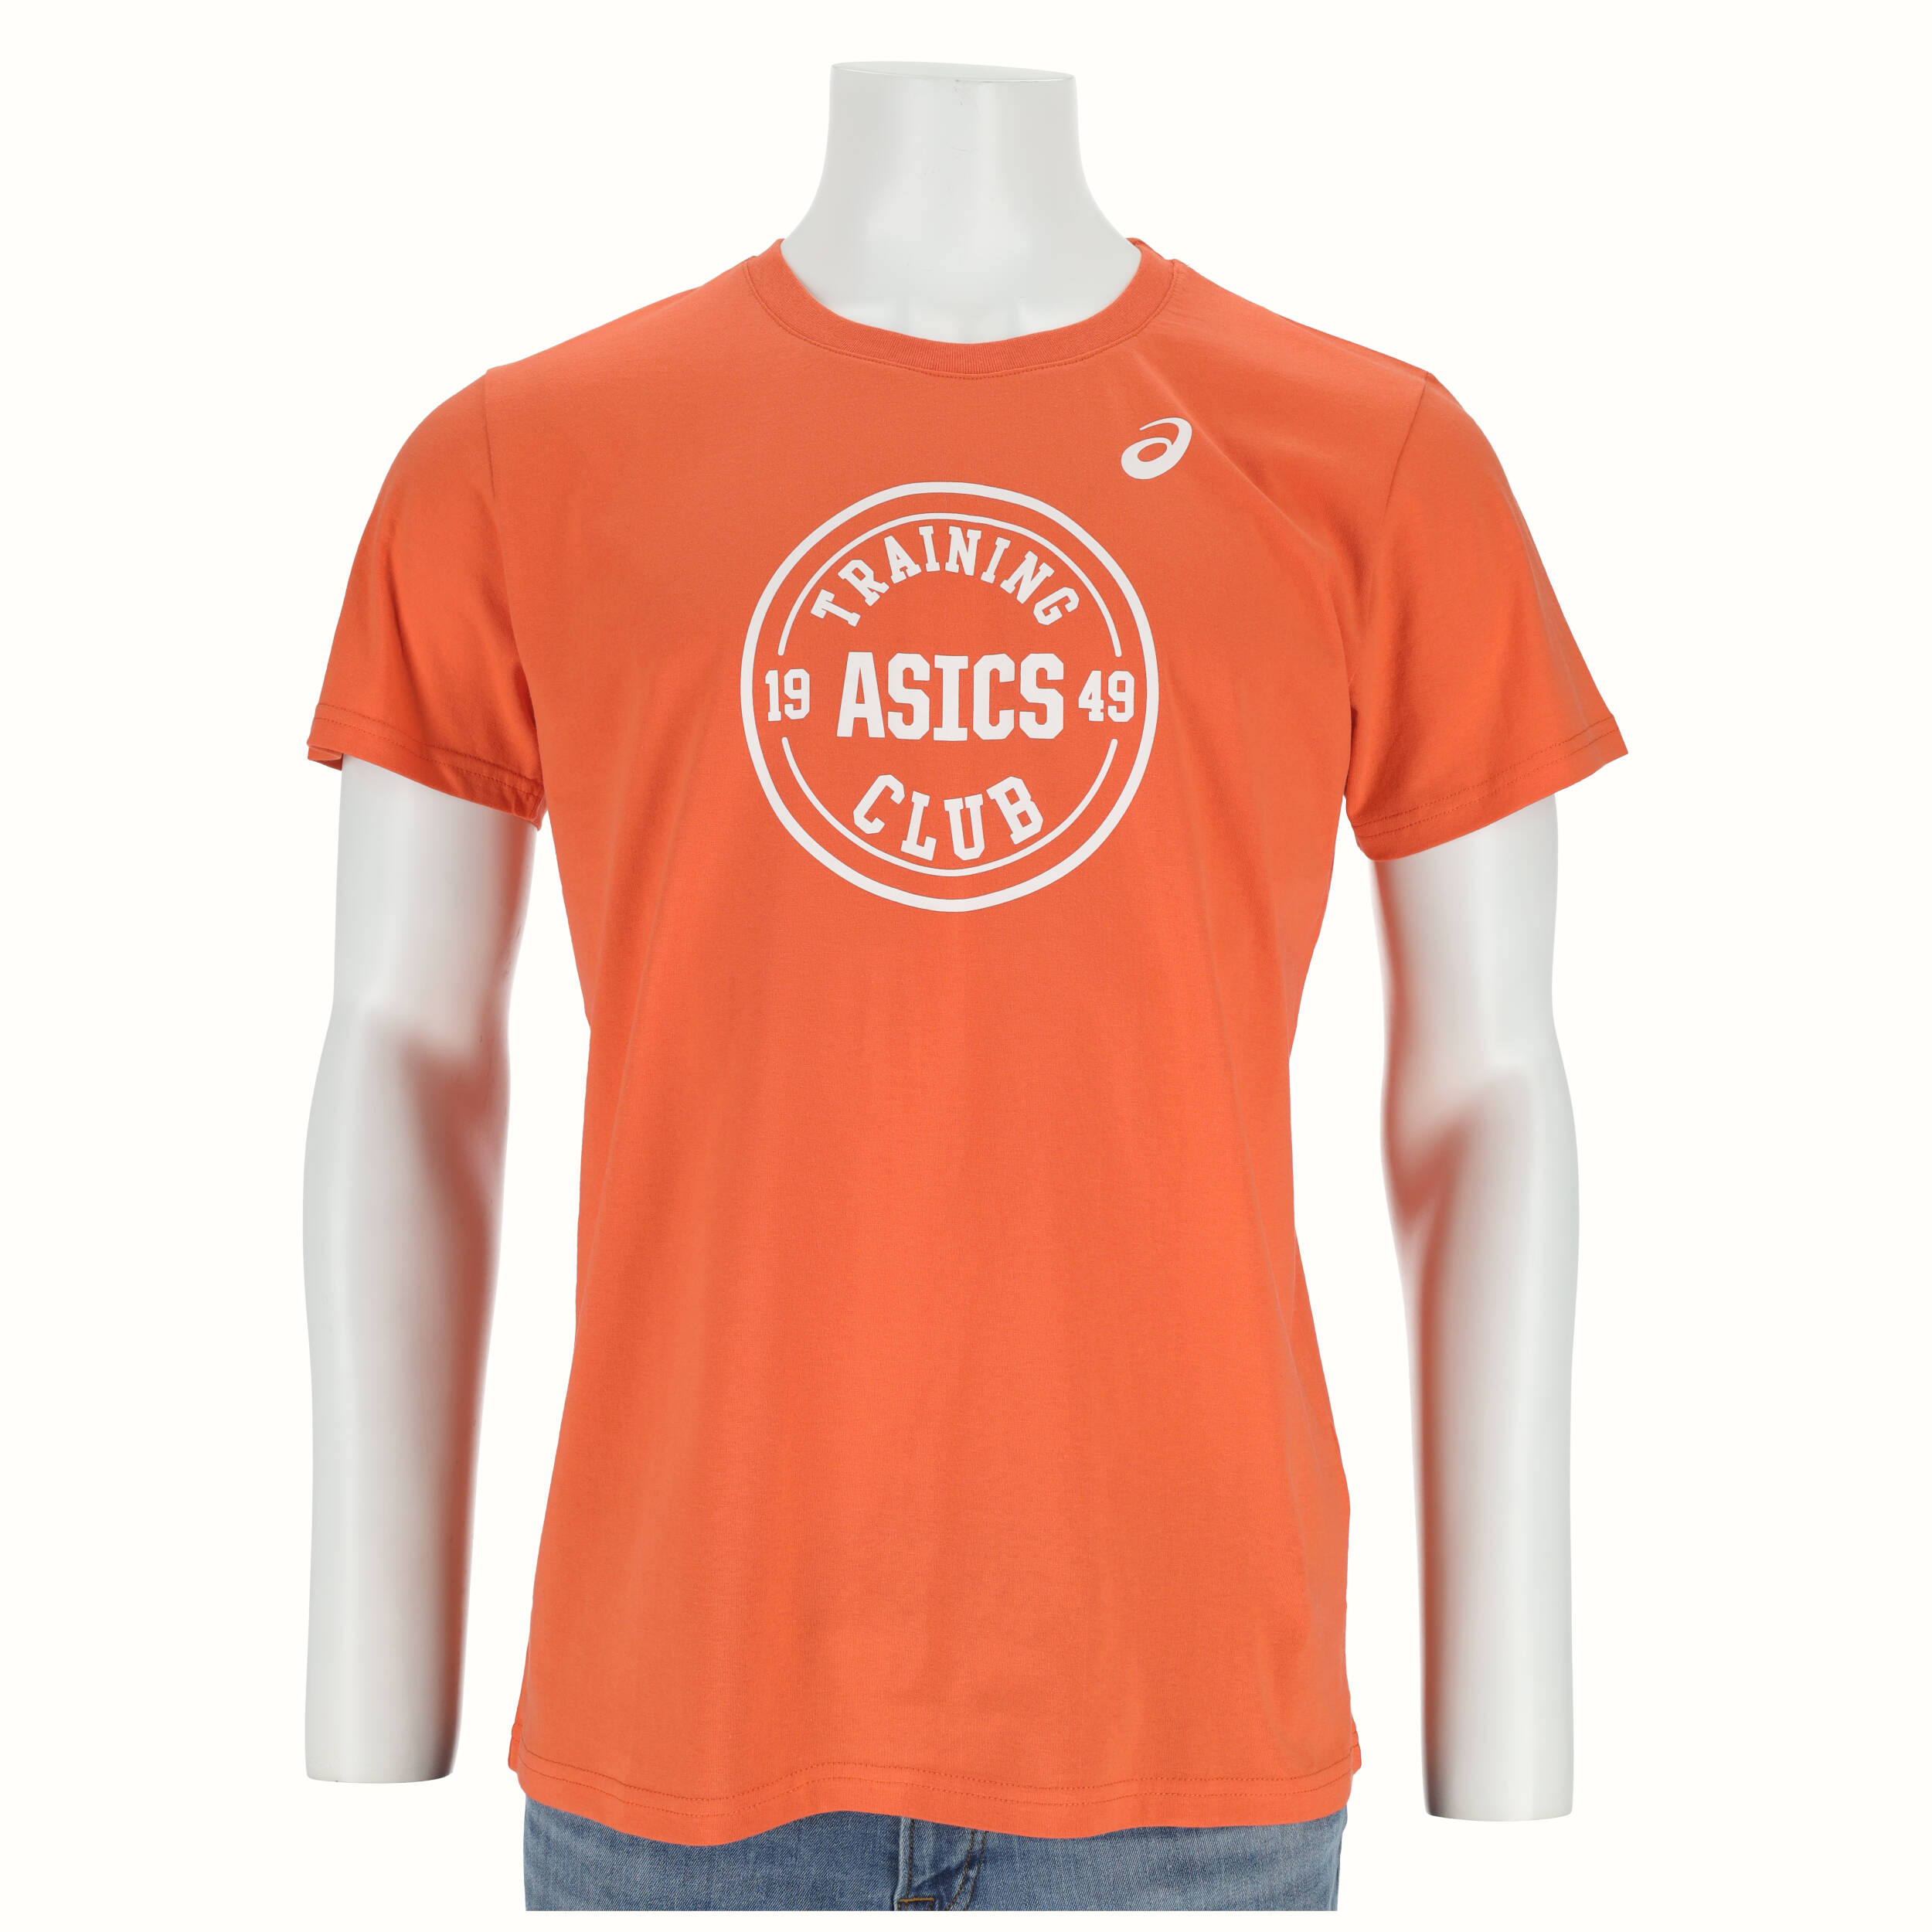 Тениска мъже Asics 150604